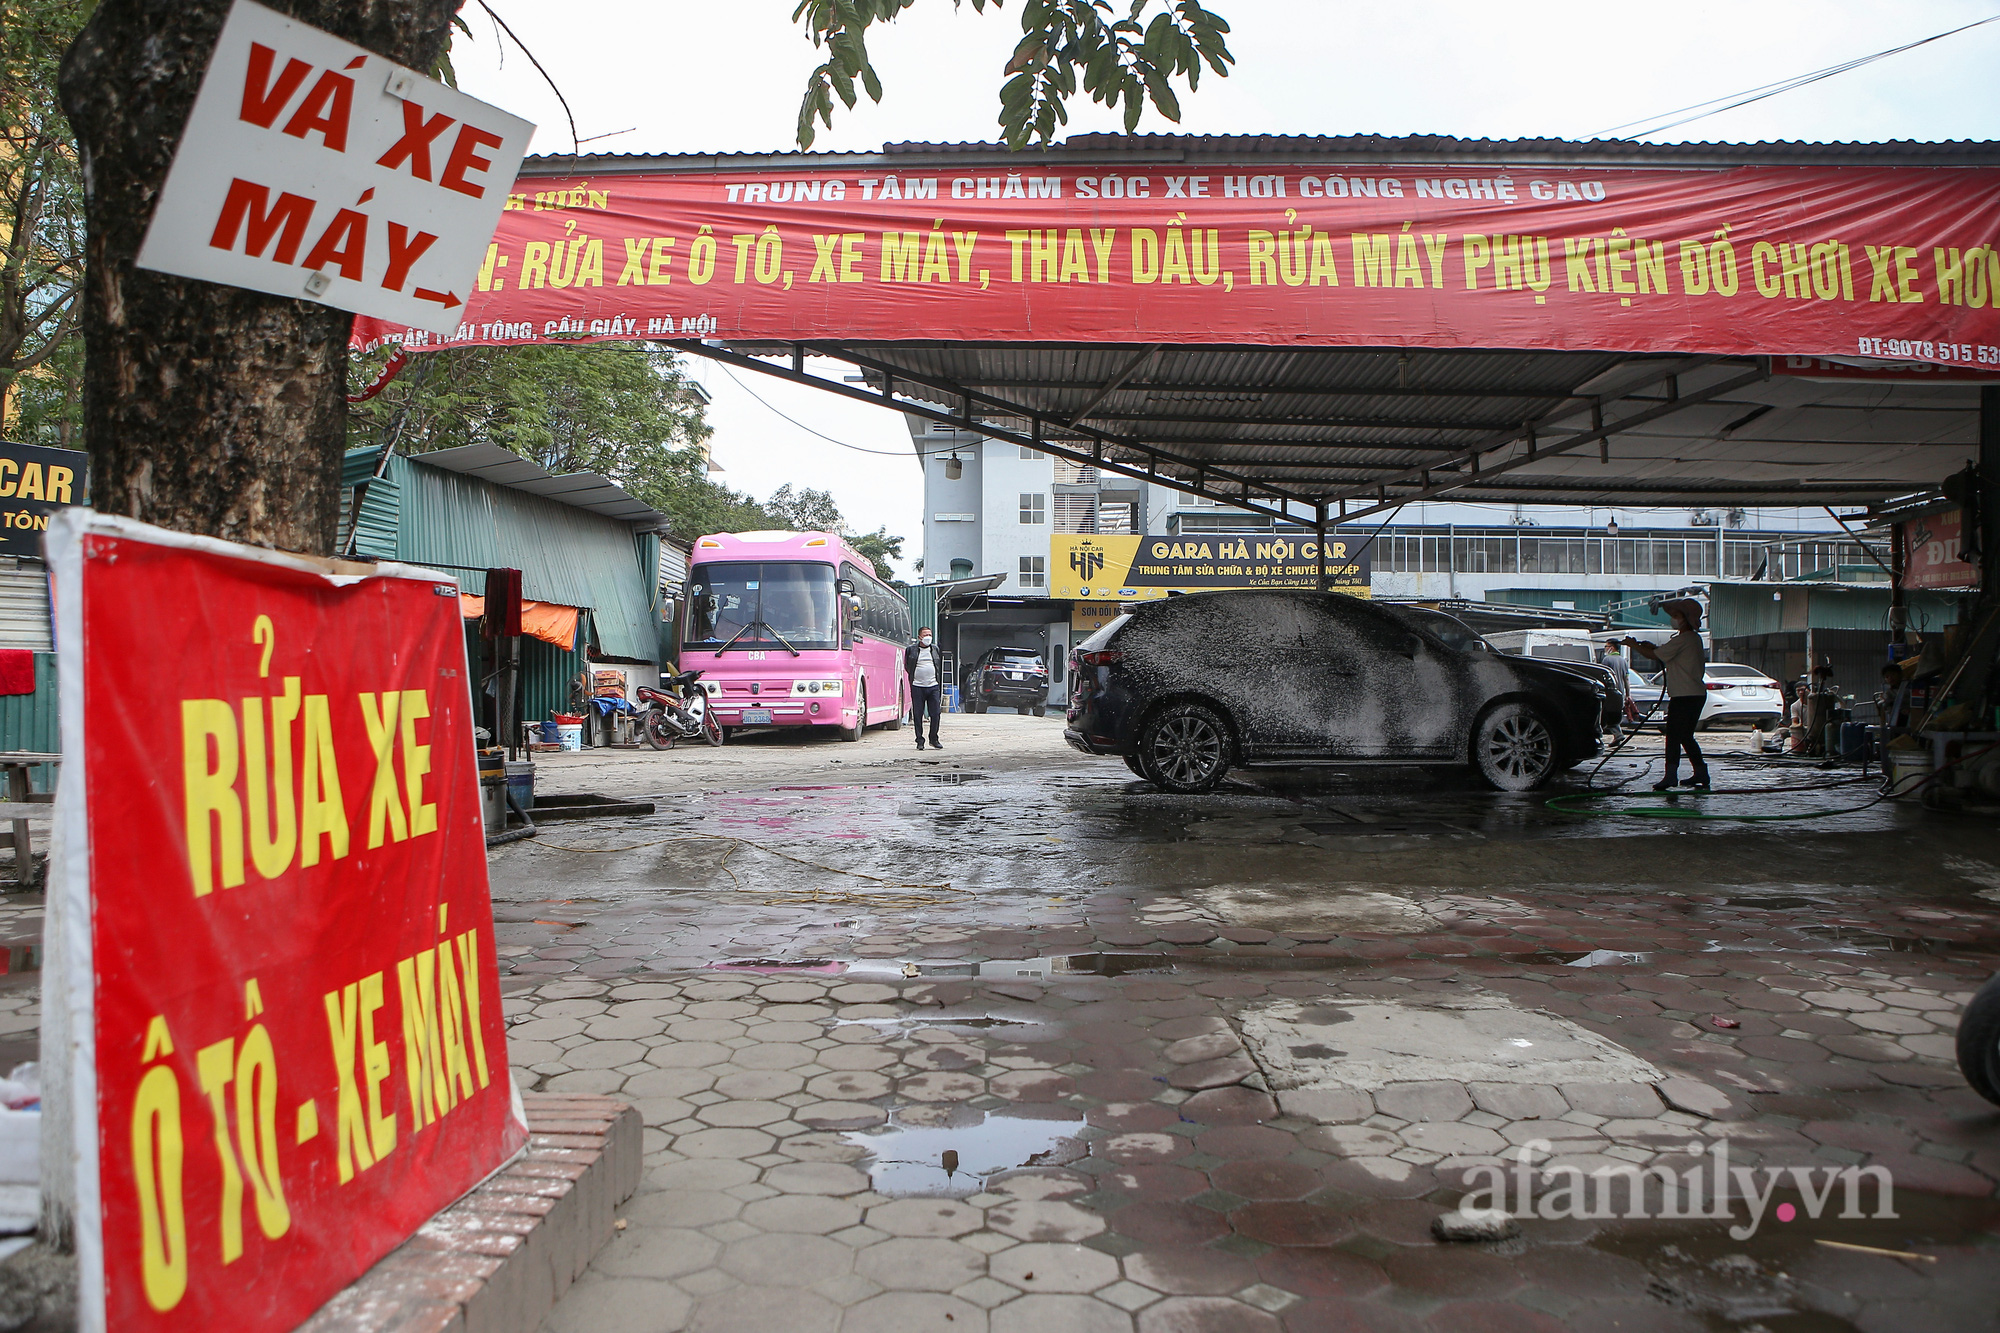 Một cửa hàng rửa xe khác trên đường Trần Thái Tông cũng rất đông khách.